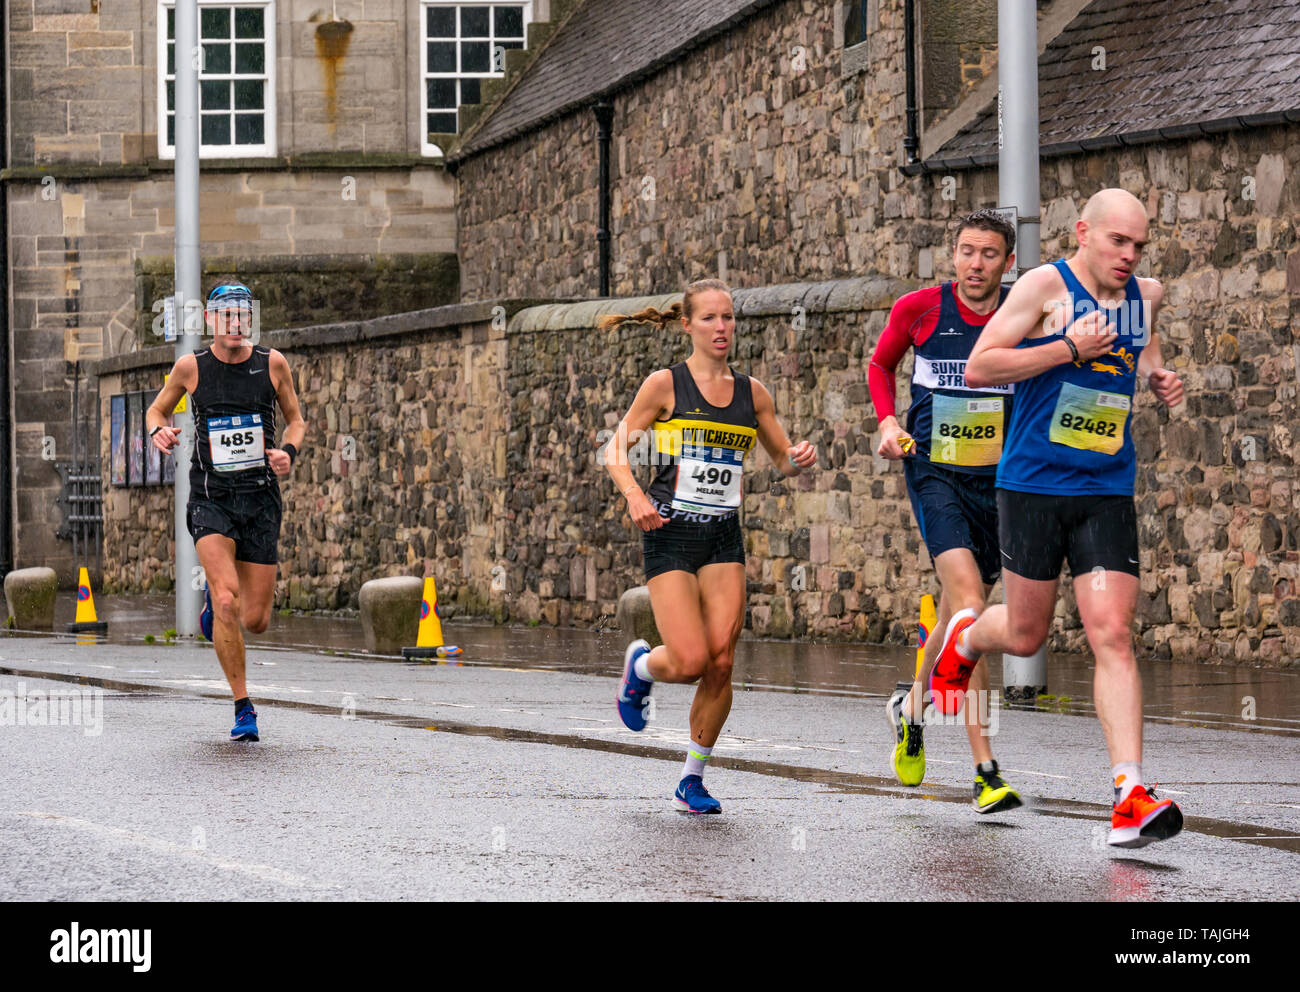 Holyrood, Edinburgh, Schottland, Vereinigtes Königreich, 26. Mai 2019. Edinburgh Marathon: Die Marathonläufer laufen an einem nassen Tag am Holyrood Palace vorbei. John Prichard-Taylor (485) belegte den 18. Platz; Melanie Wilkins (490) erste Läuferin über die Ziellinie und auf dem 24. Platz insgesamt; Brendan O'Grady (82428) belegte den 33. Platz; Tom Fairbrother (82482) belegte den 13. Platz Stockfoto